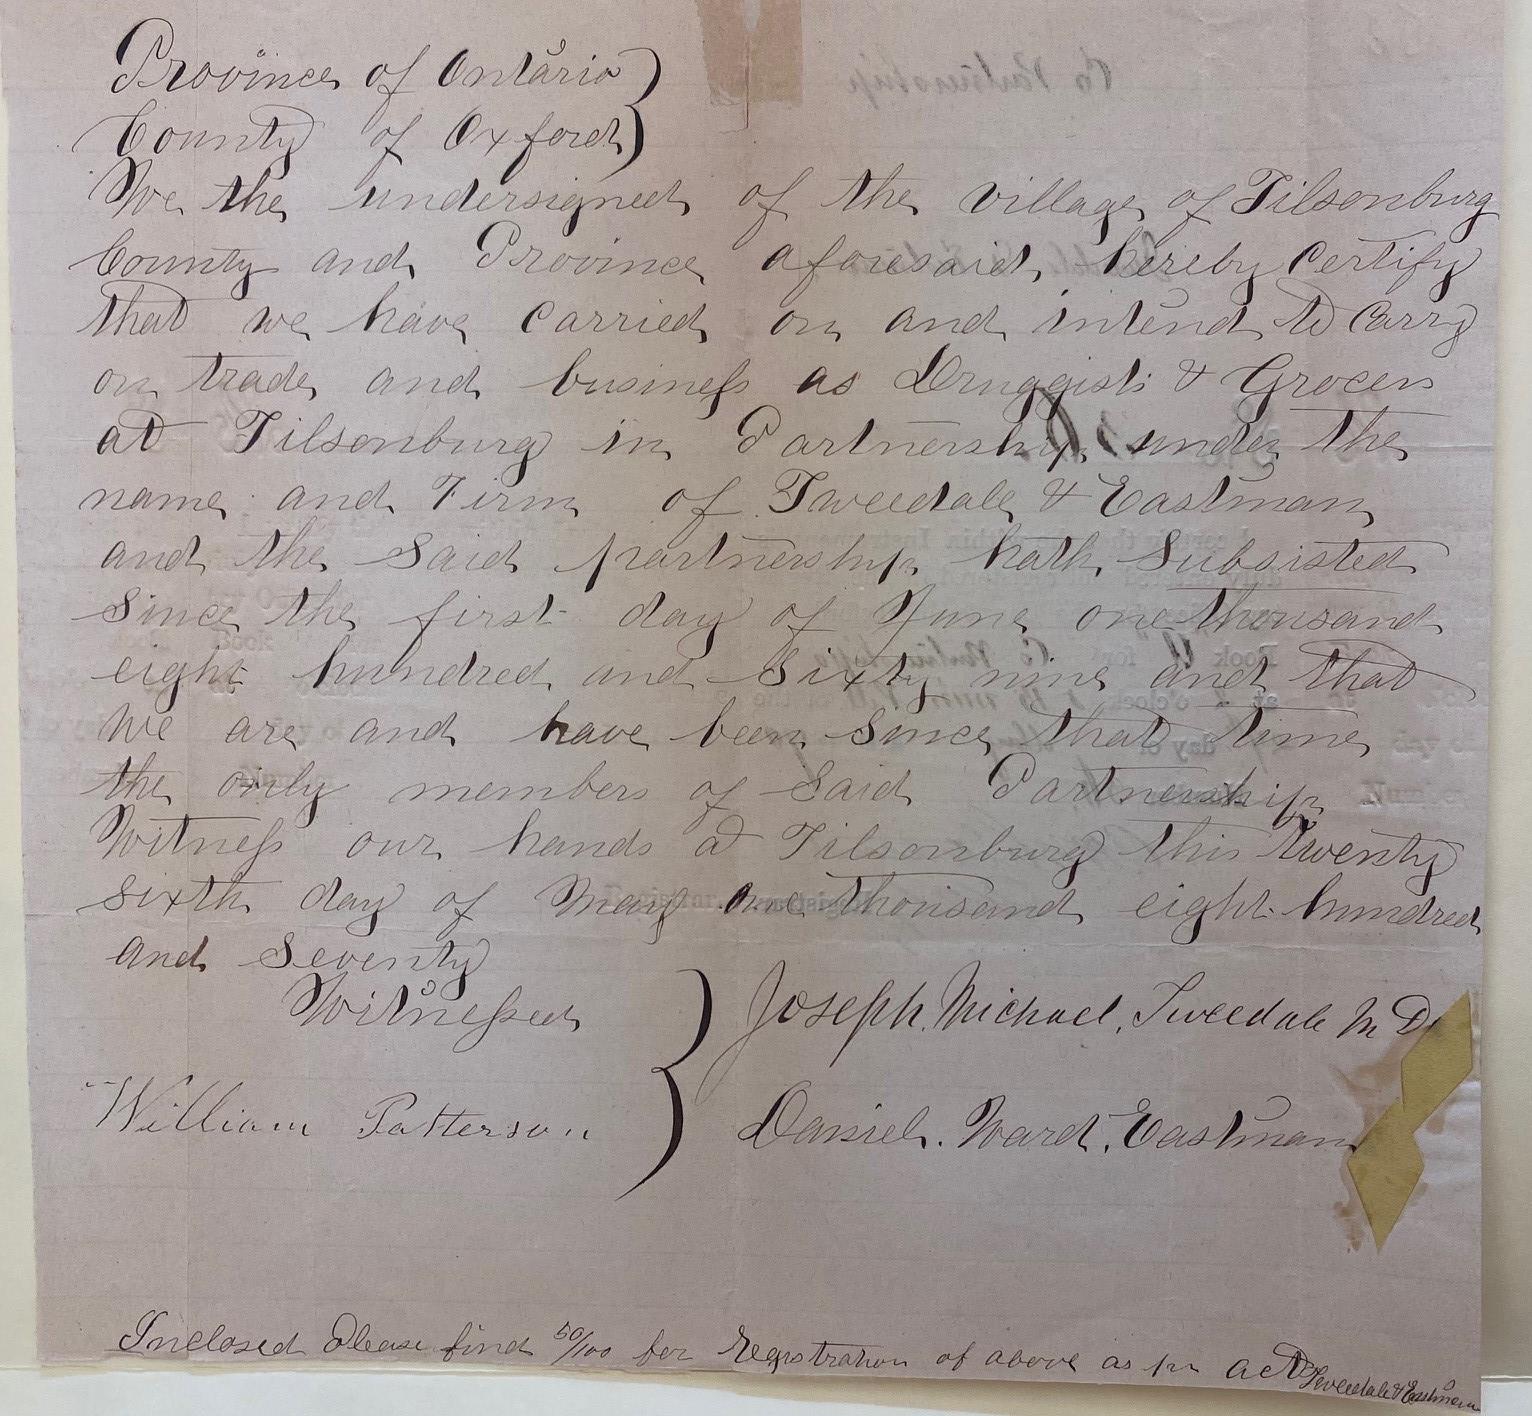 Handwritten declaration of partnership between Joseph Tweedale and Daniel Eastman of Tillsonburg.